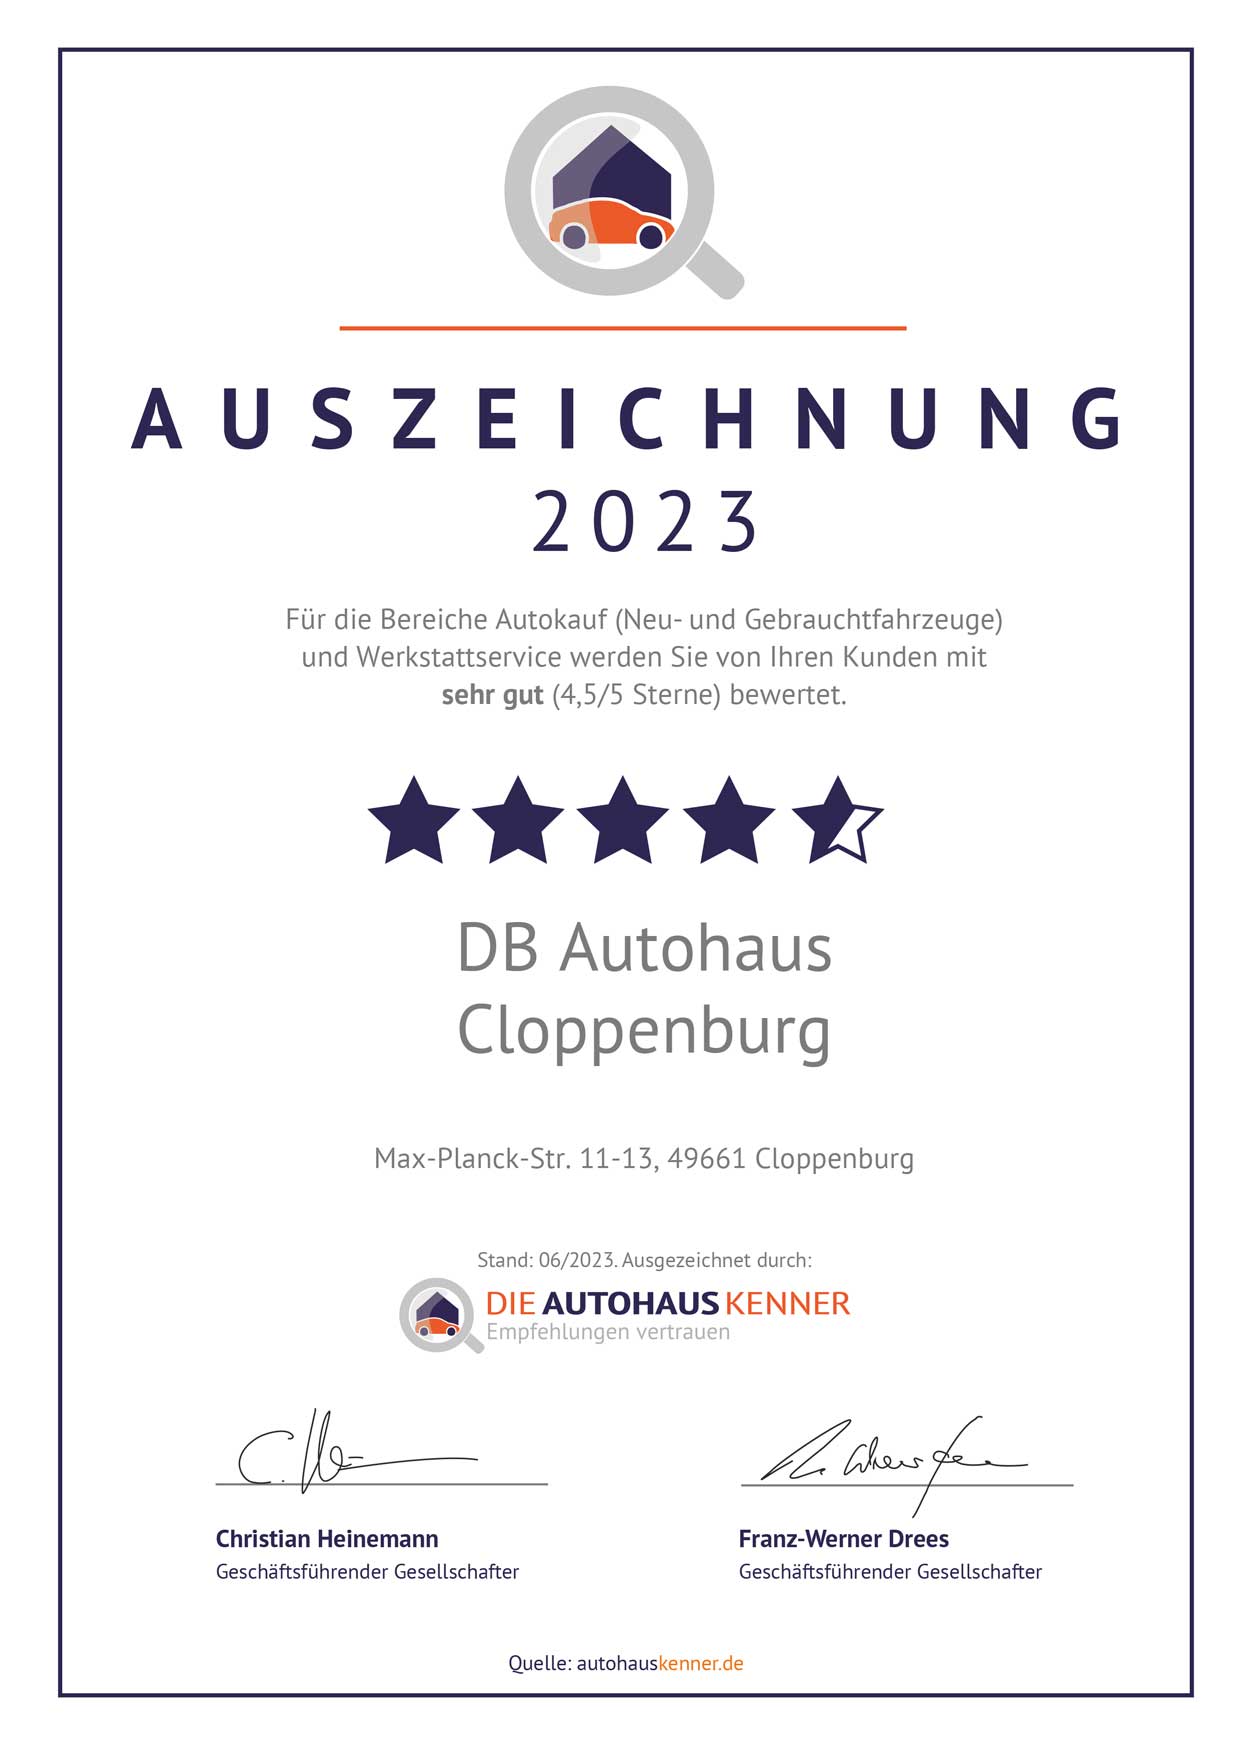 Auszeichnung von Autohauskenner für DB Autohaus Cloppenburg 2023